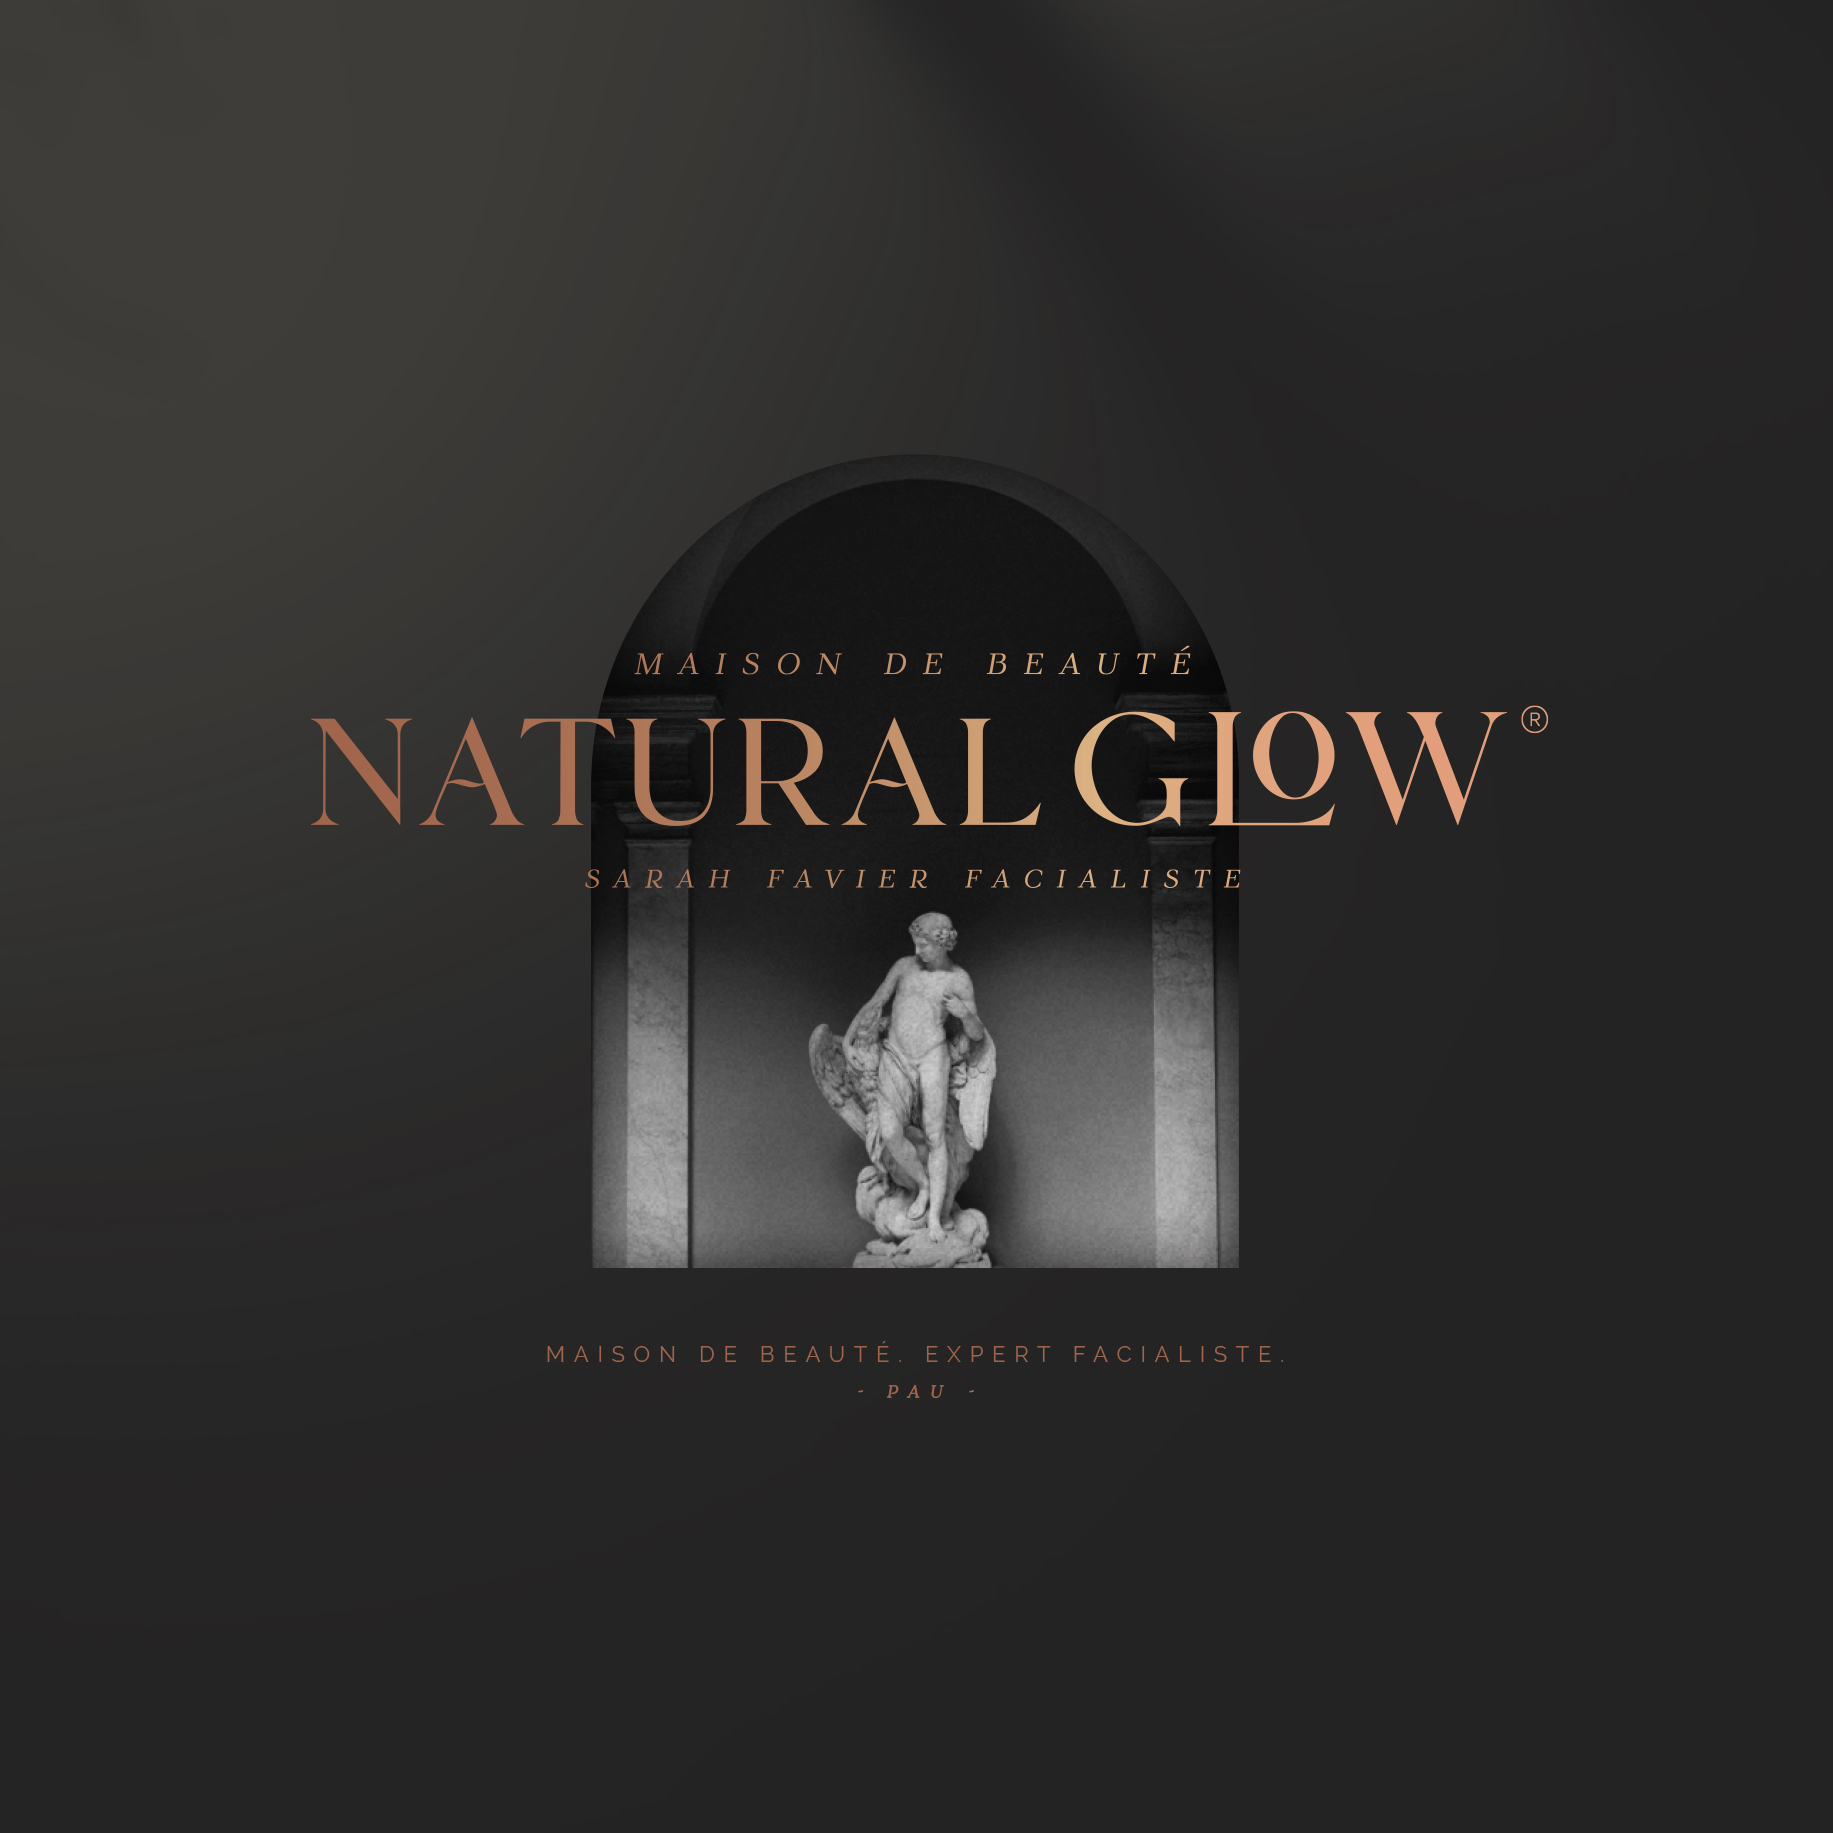 Natural Glow, Maison de beauté